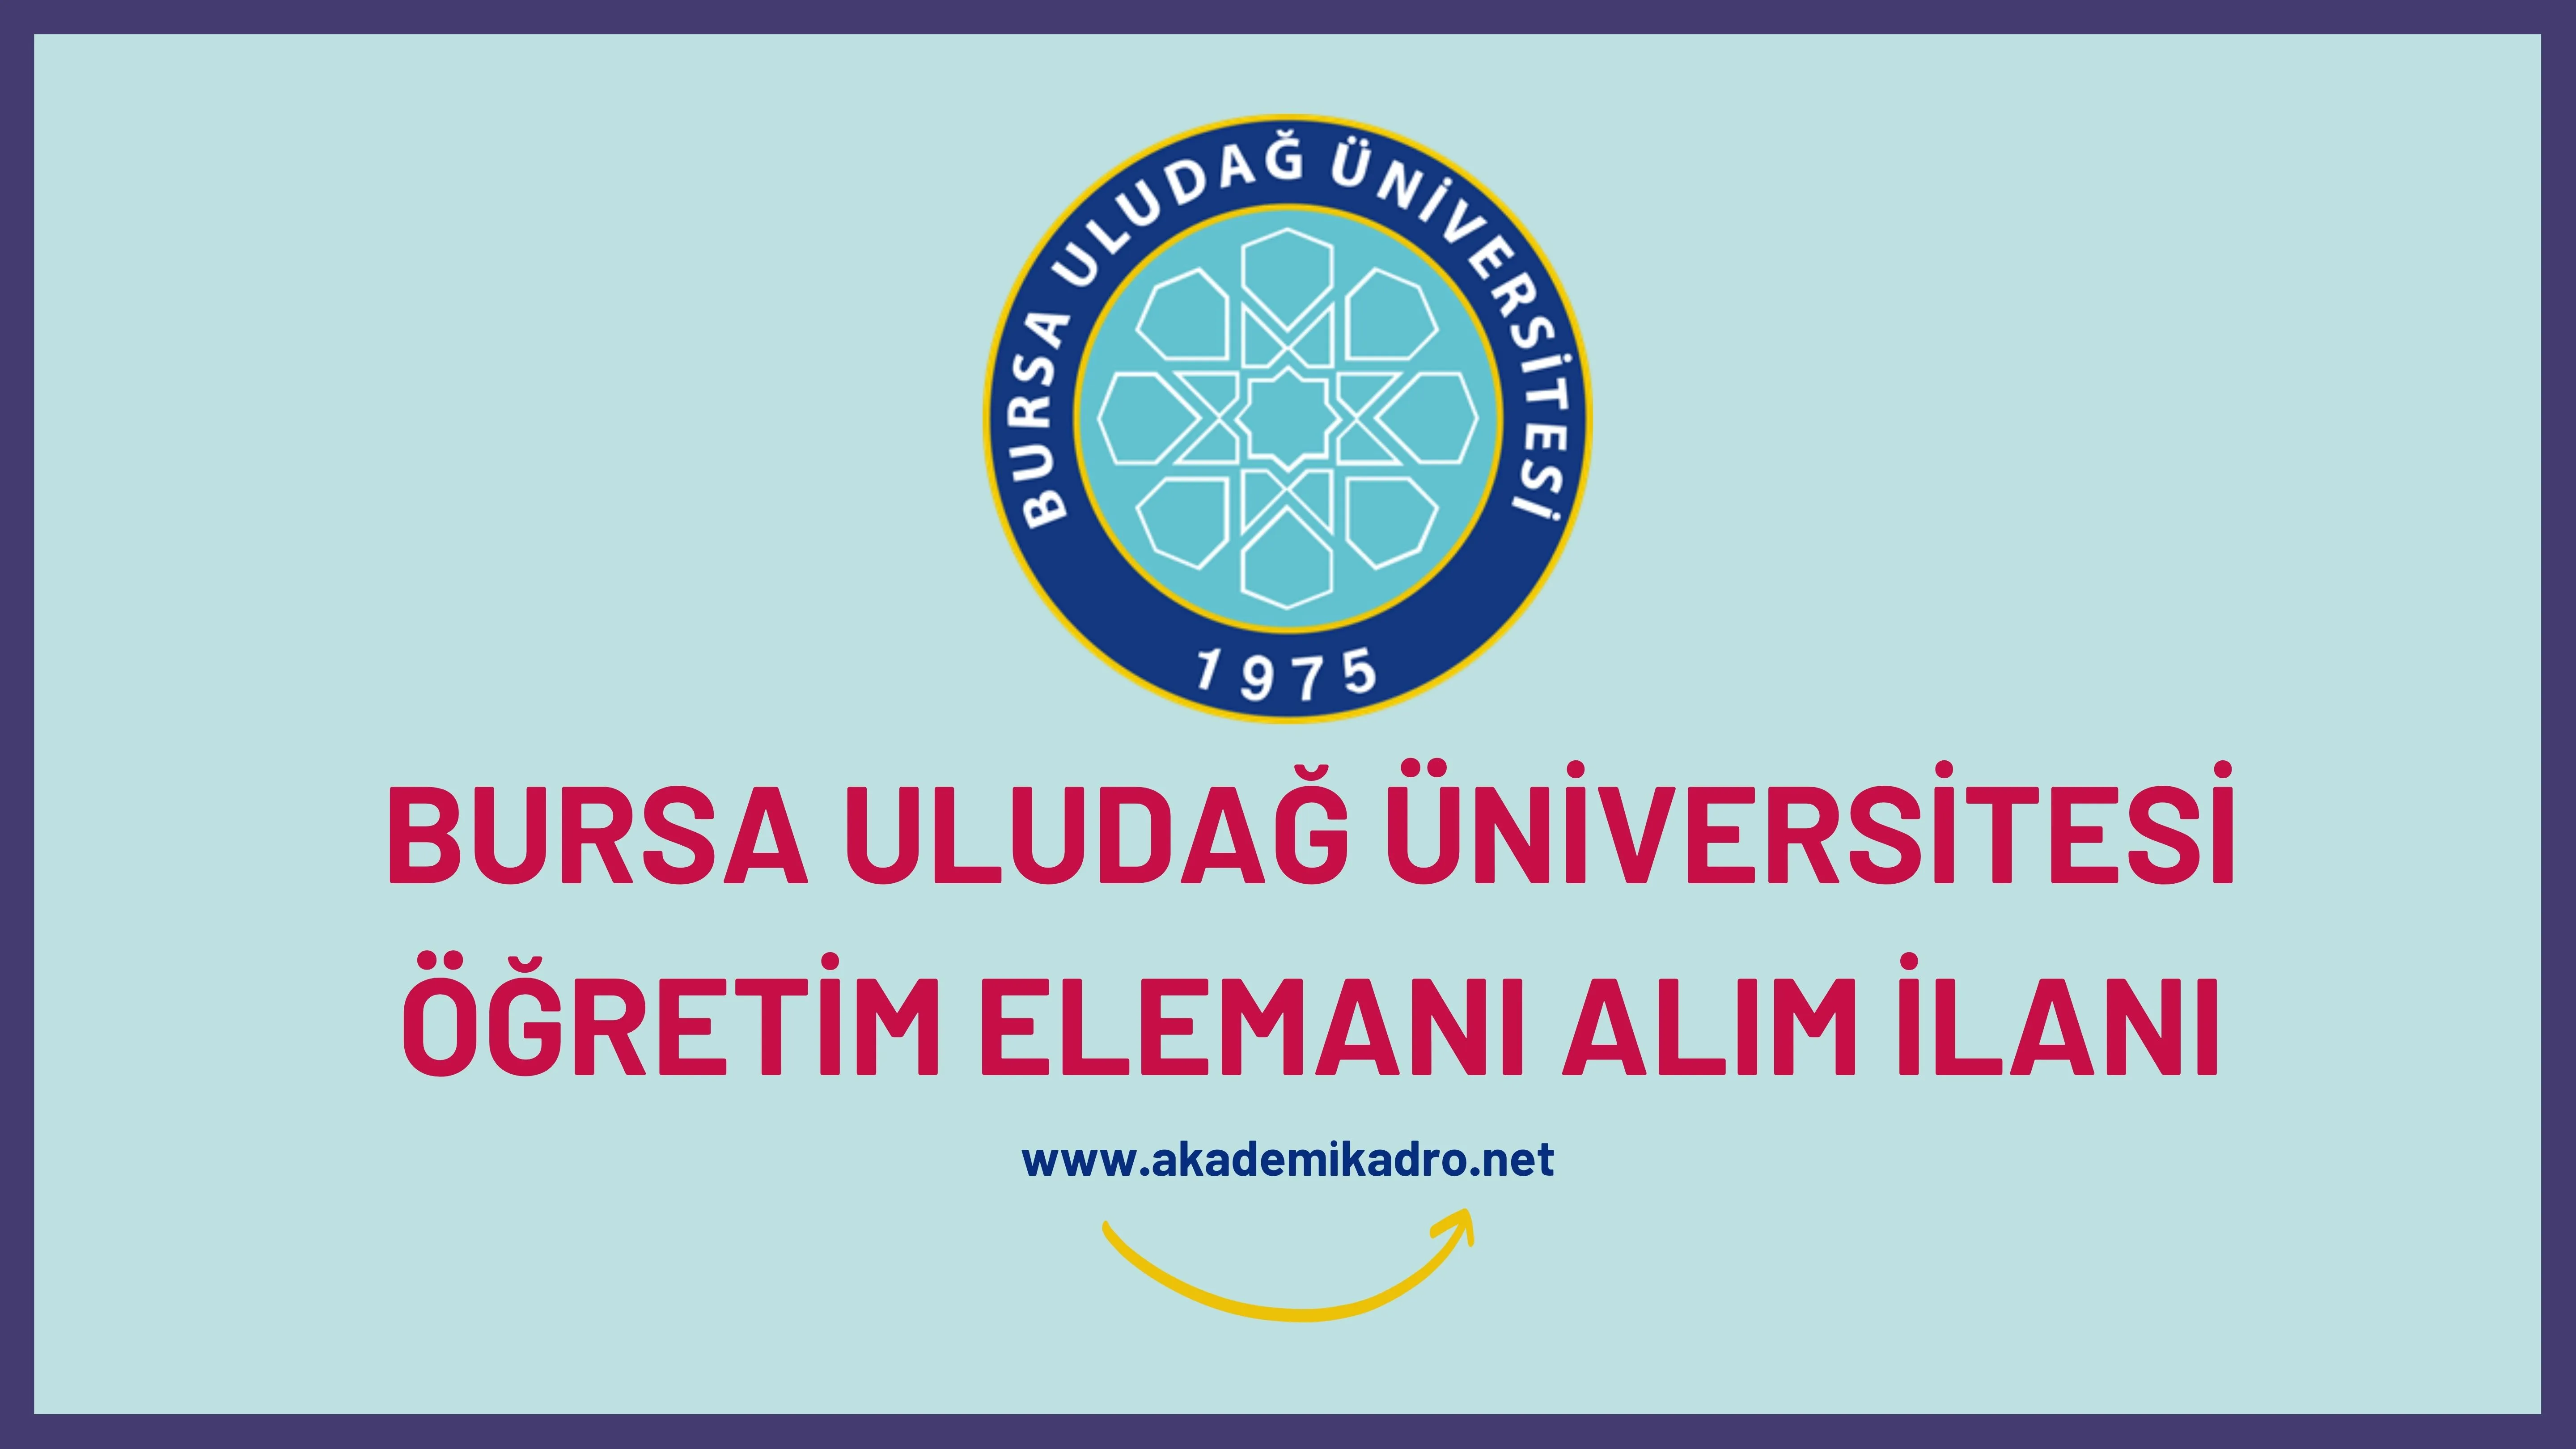 Bursa Uludağ Üniversitesi 4 Öğretim Görevlisi ve Araştırma görevlisi alacaktır. Son başvuru tarihi 17 Ekim 2022